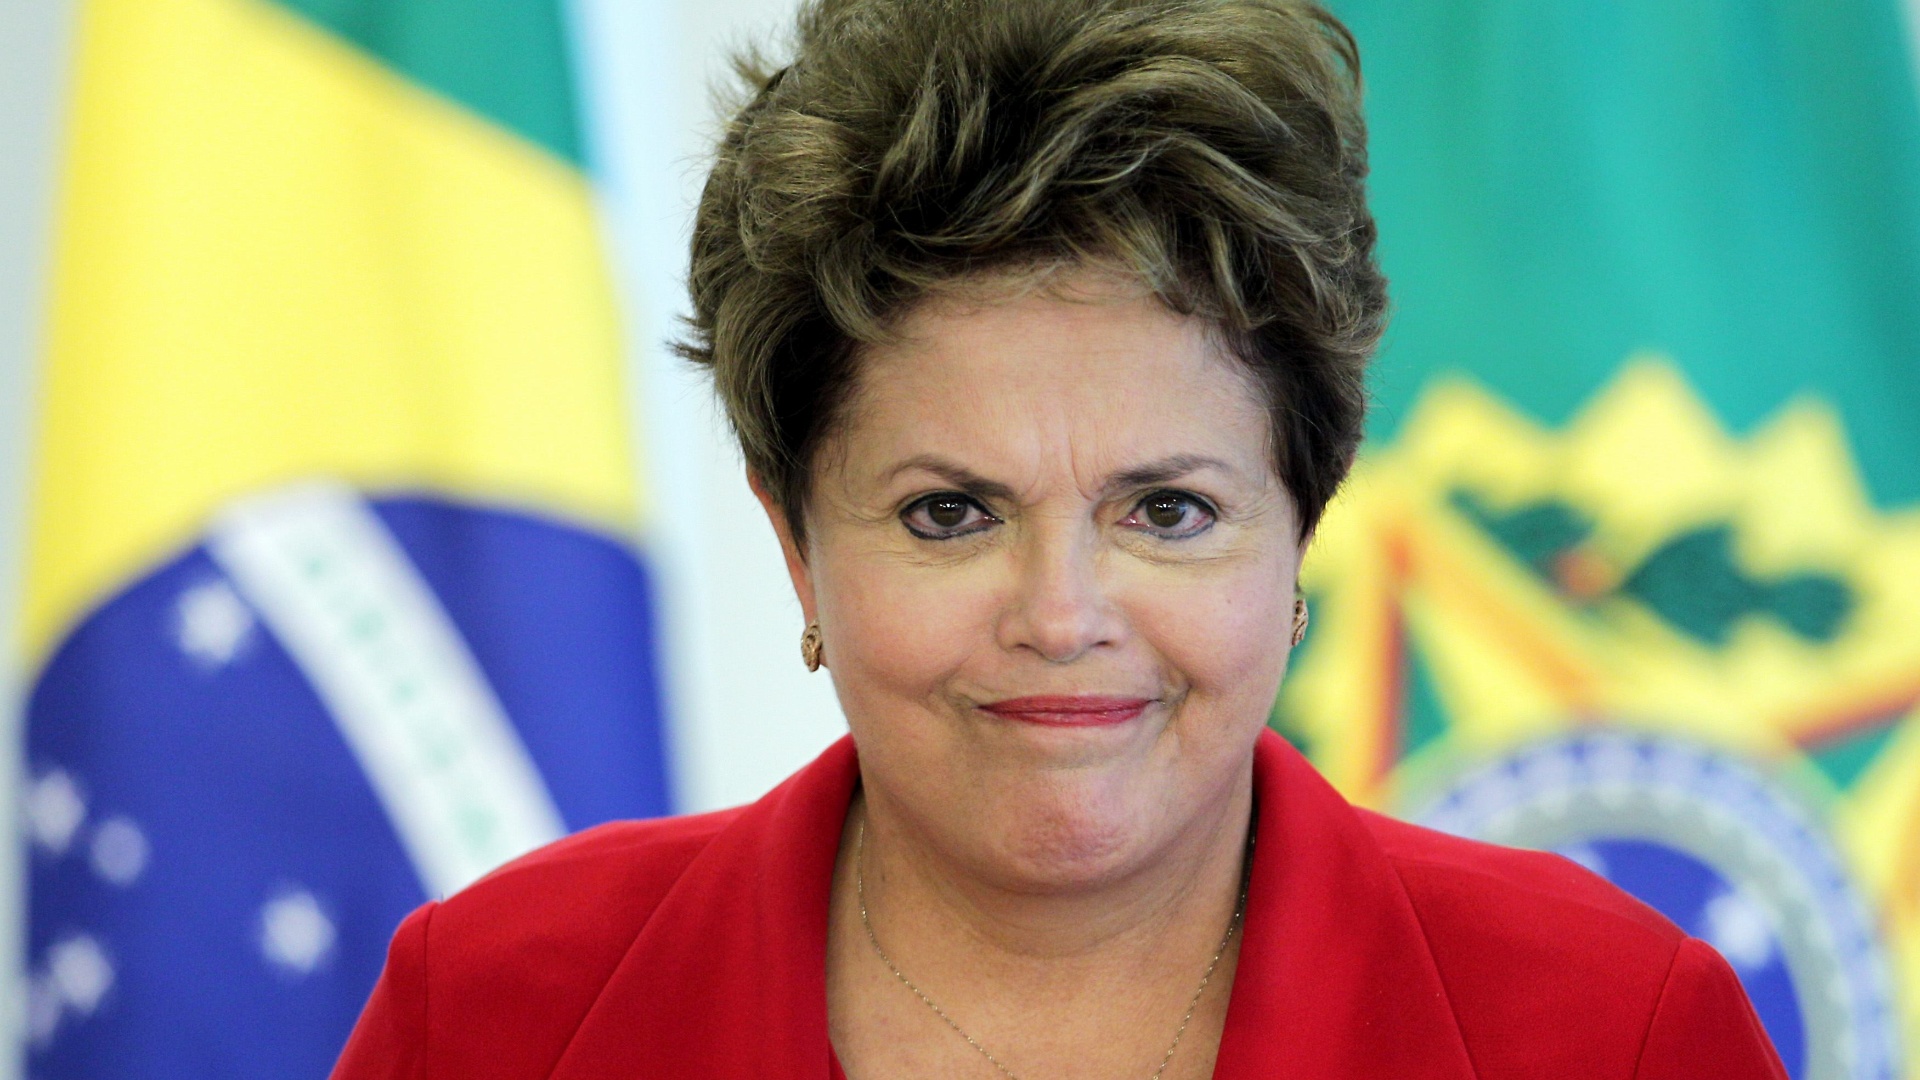 Sob Dilma, Brasil perde US$ 285 bilhões em três anos O Financial Times, principal noticioso econômico no mundo, informa que nos últimos três anos, quase US$ 285 bilhões em investimentos estrangeiros "evaporaram" do país. O jornal analisa números do Banco Central: os fluxos de investimentos estrangeiros estavam acima de US$ 260 bilhões entre janeiro de 2011 e novembro de 2013. No mesmo período, o valor dos ativos em posse de estrangeiros caiu US$ 24 bilhões, implicando destruição de valor de mais de US$ 284 bilhões. A matéria é destaque n'O Globo.